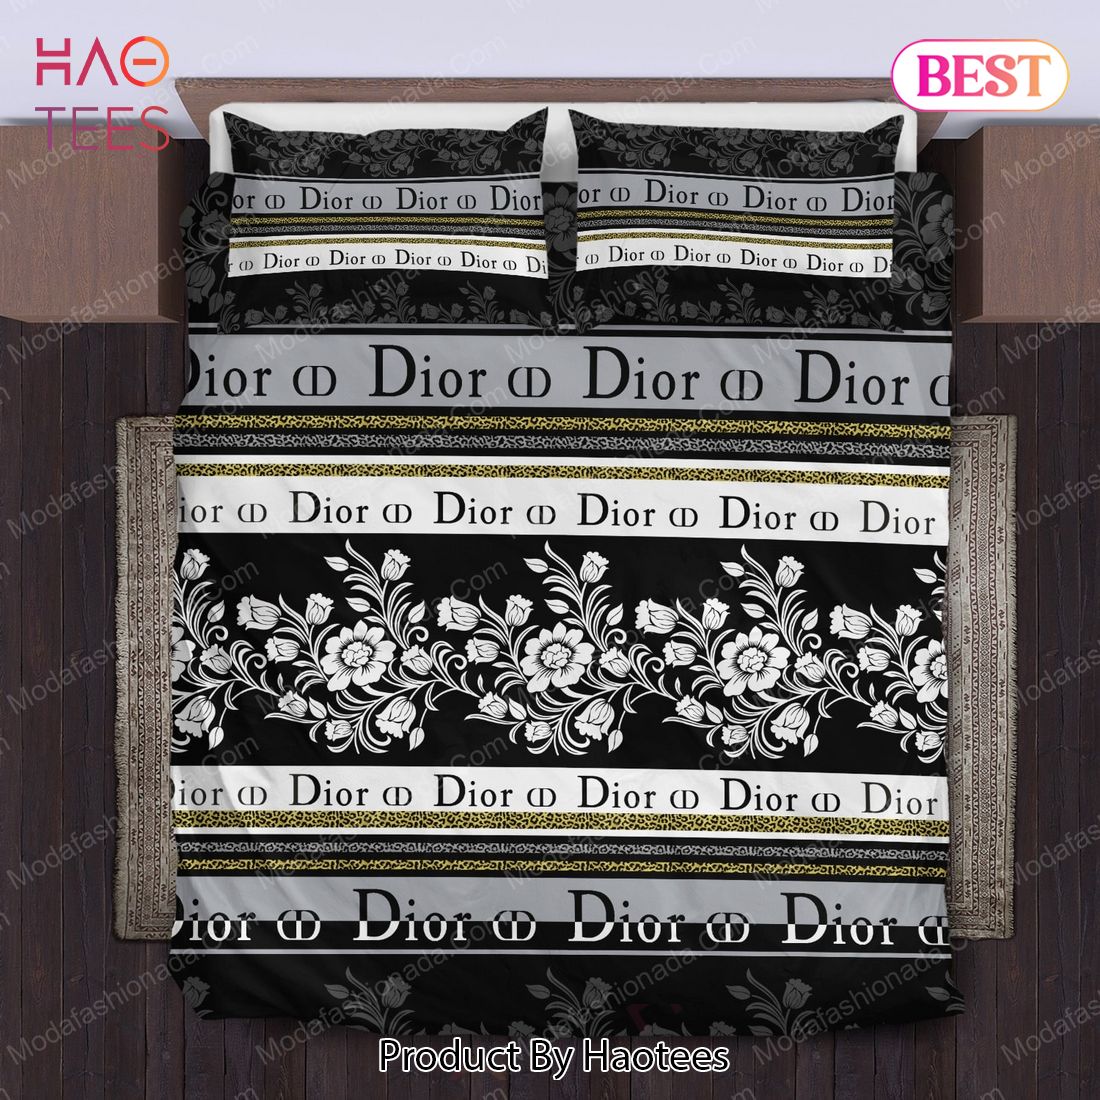 Buy Dior Flower Bedding Sets Bed Sets, Bedroom Sets, Comforter Sets, Duvet Cover, Bedspread